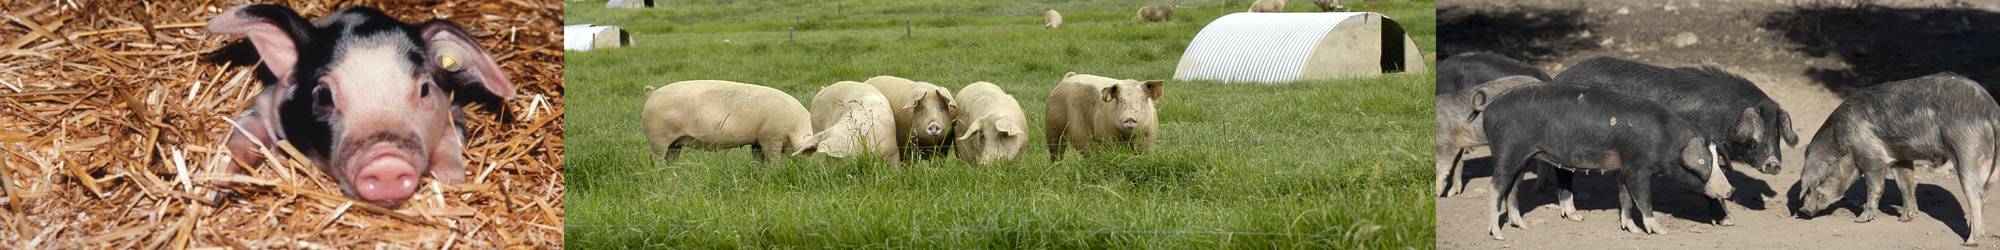 Groupe Filière porcine : Elevage de porcs en pleine air intégral.